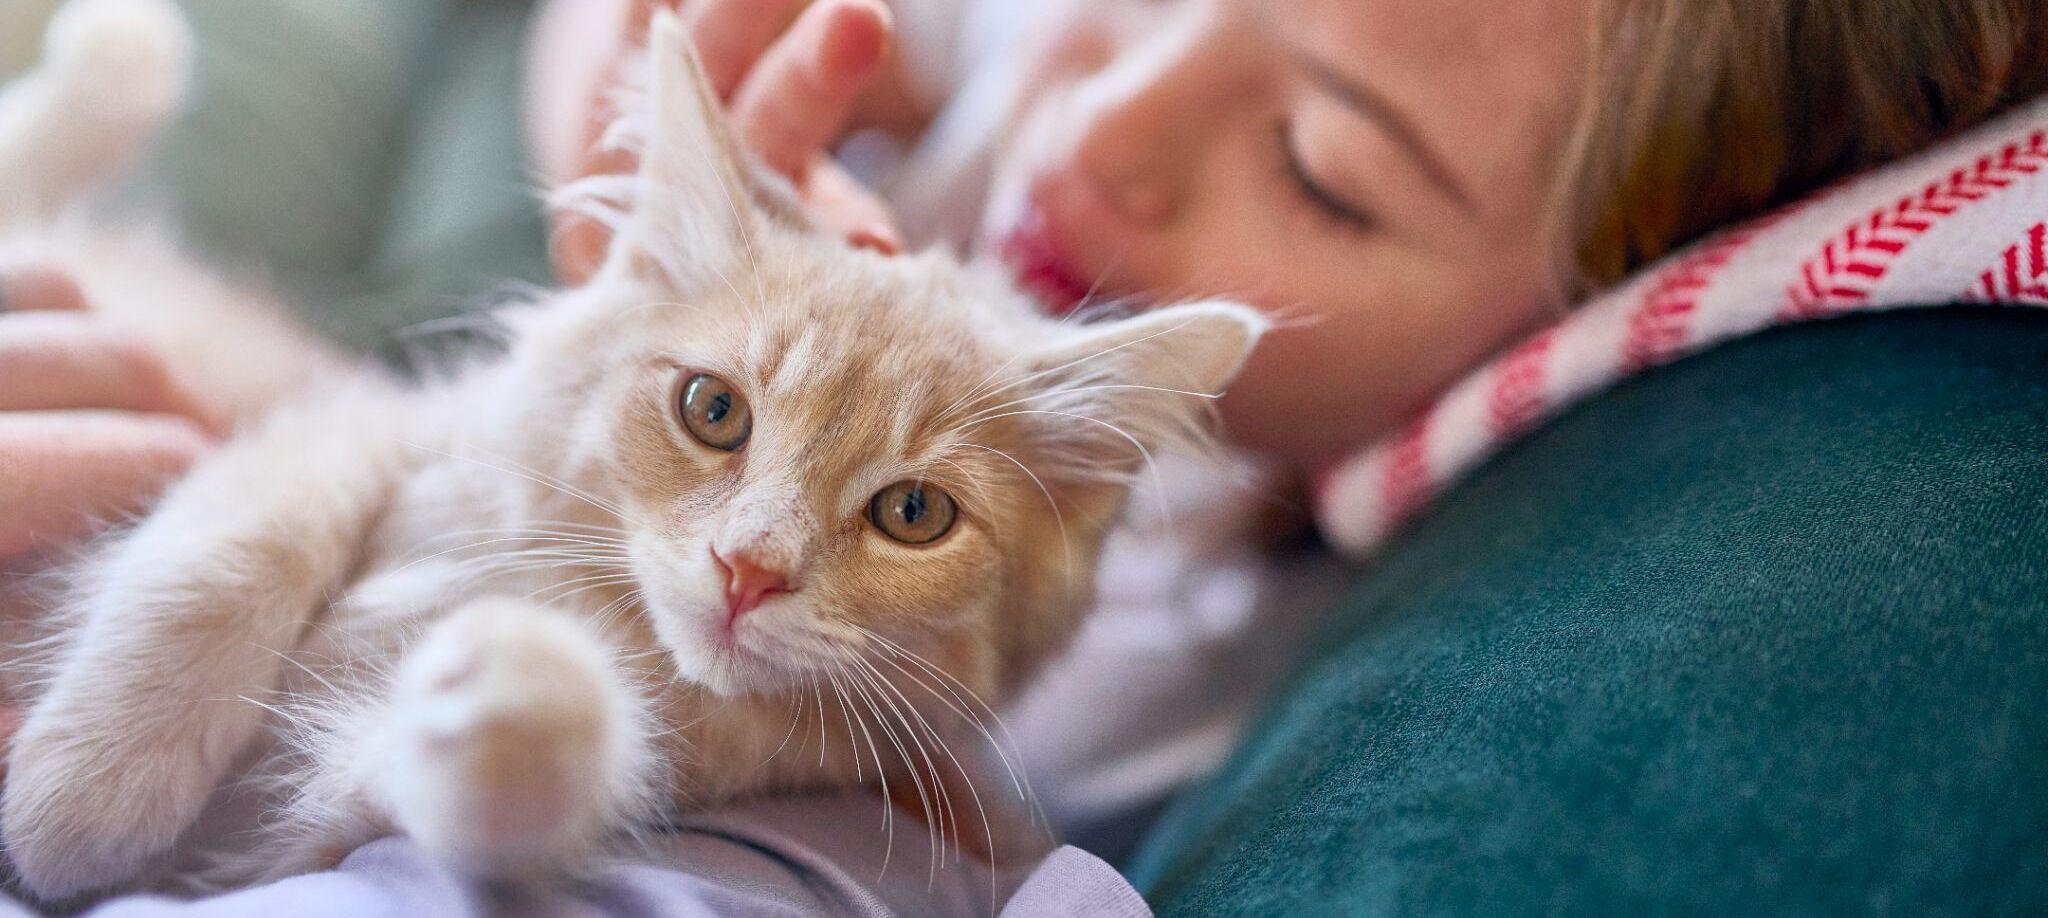 Уход за кошками - как правильно ухаживать за котенком? | Royal Canin